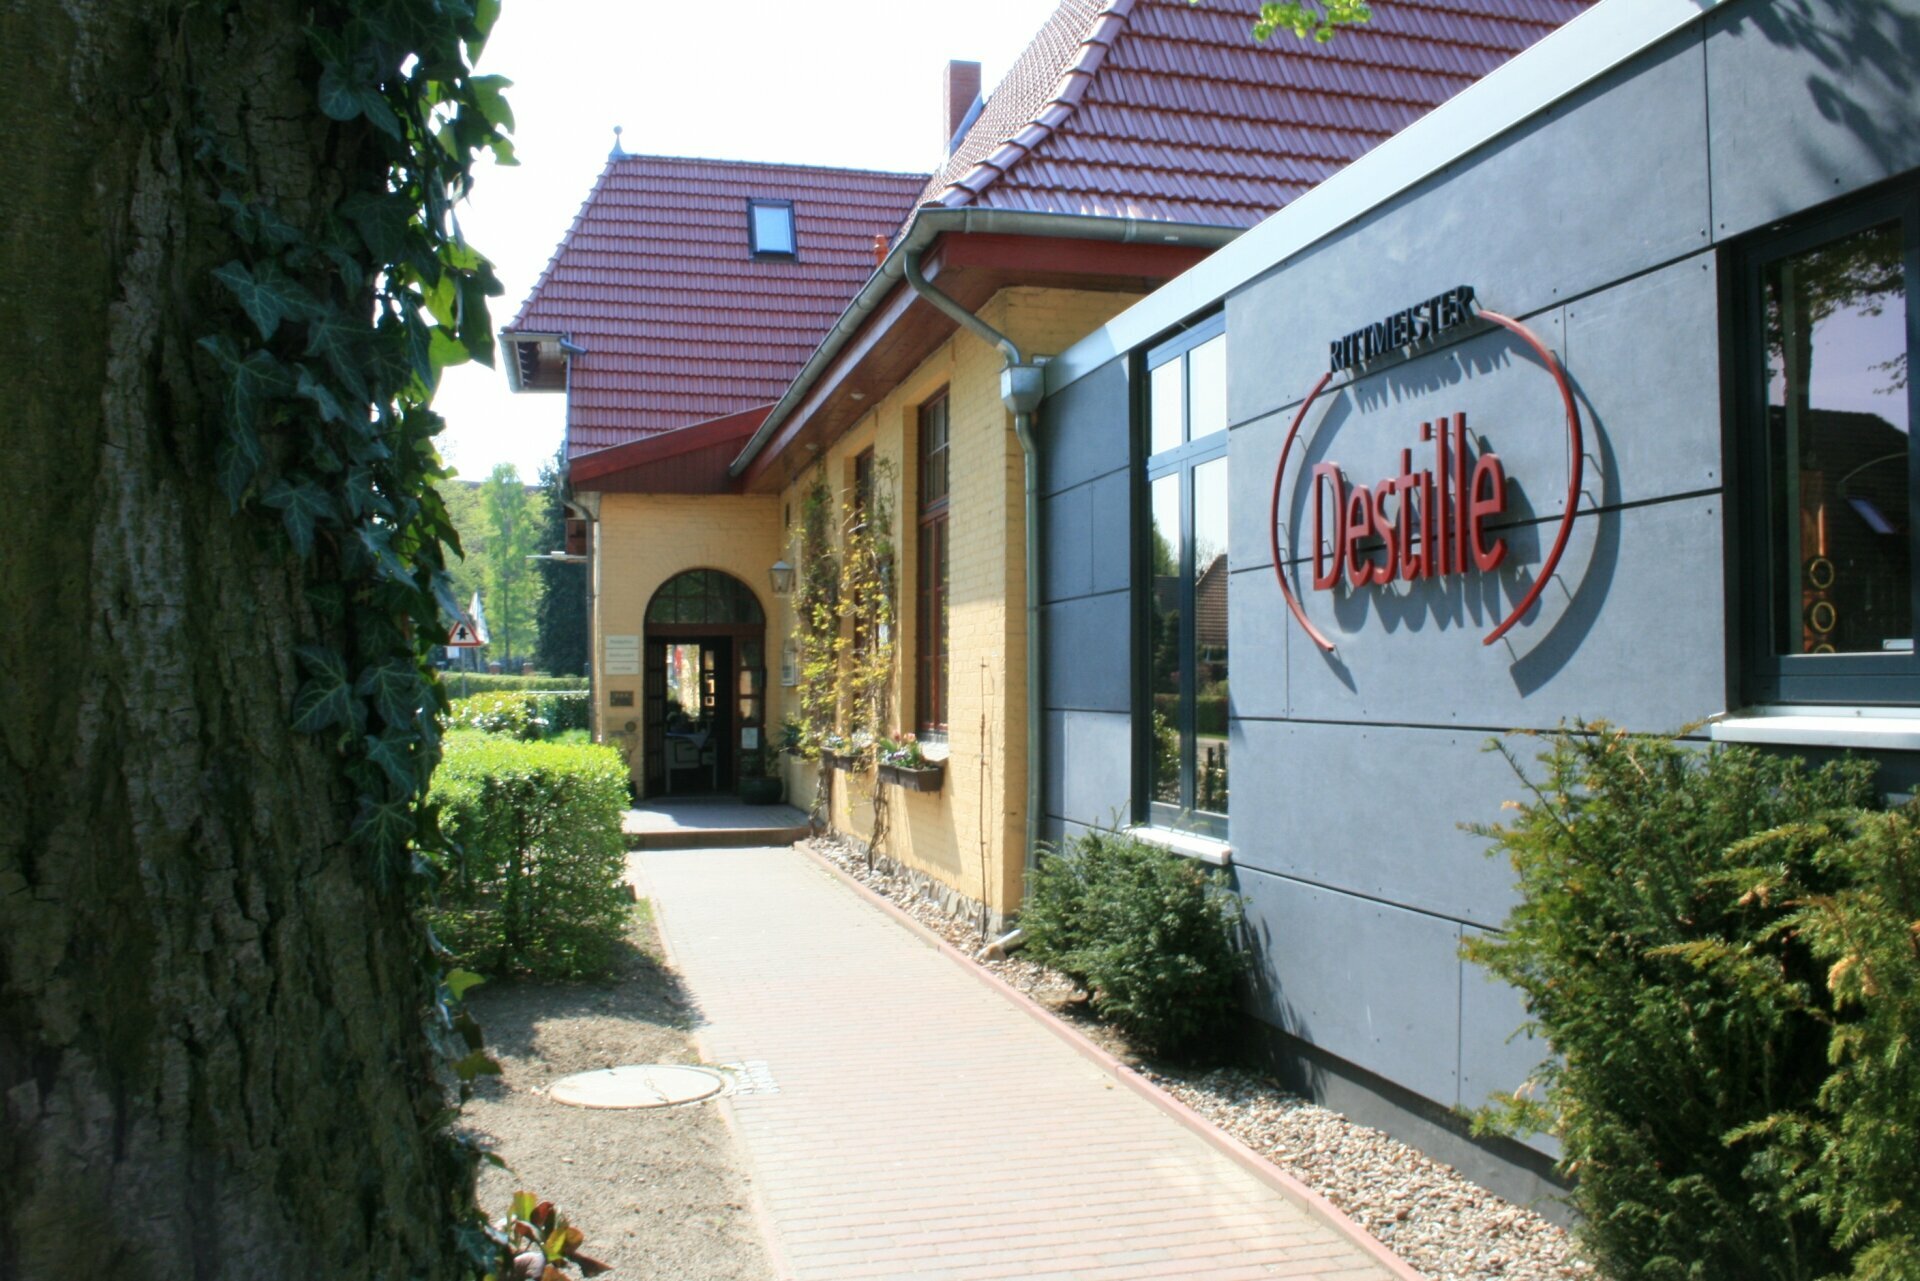 2 Tage Kulinarische Wellness Auszeit Landhotel Rittmeister in Rostock, Mecklenburg-Vorpommern inkl. Halbpension